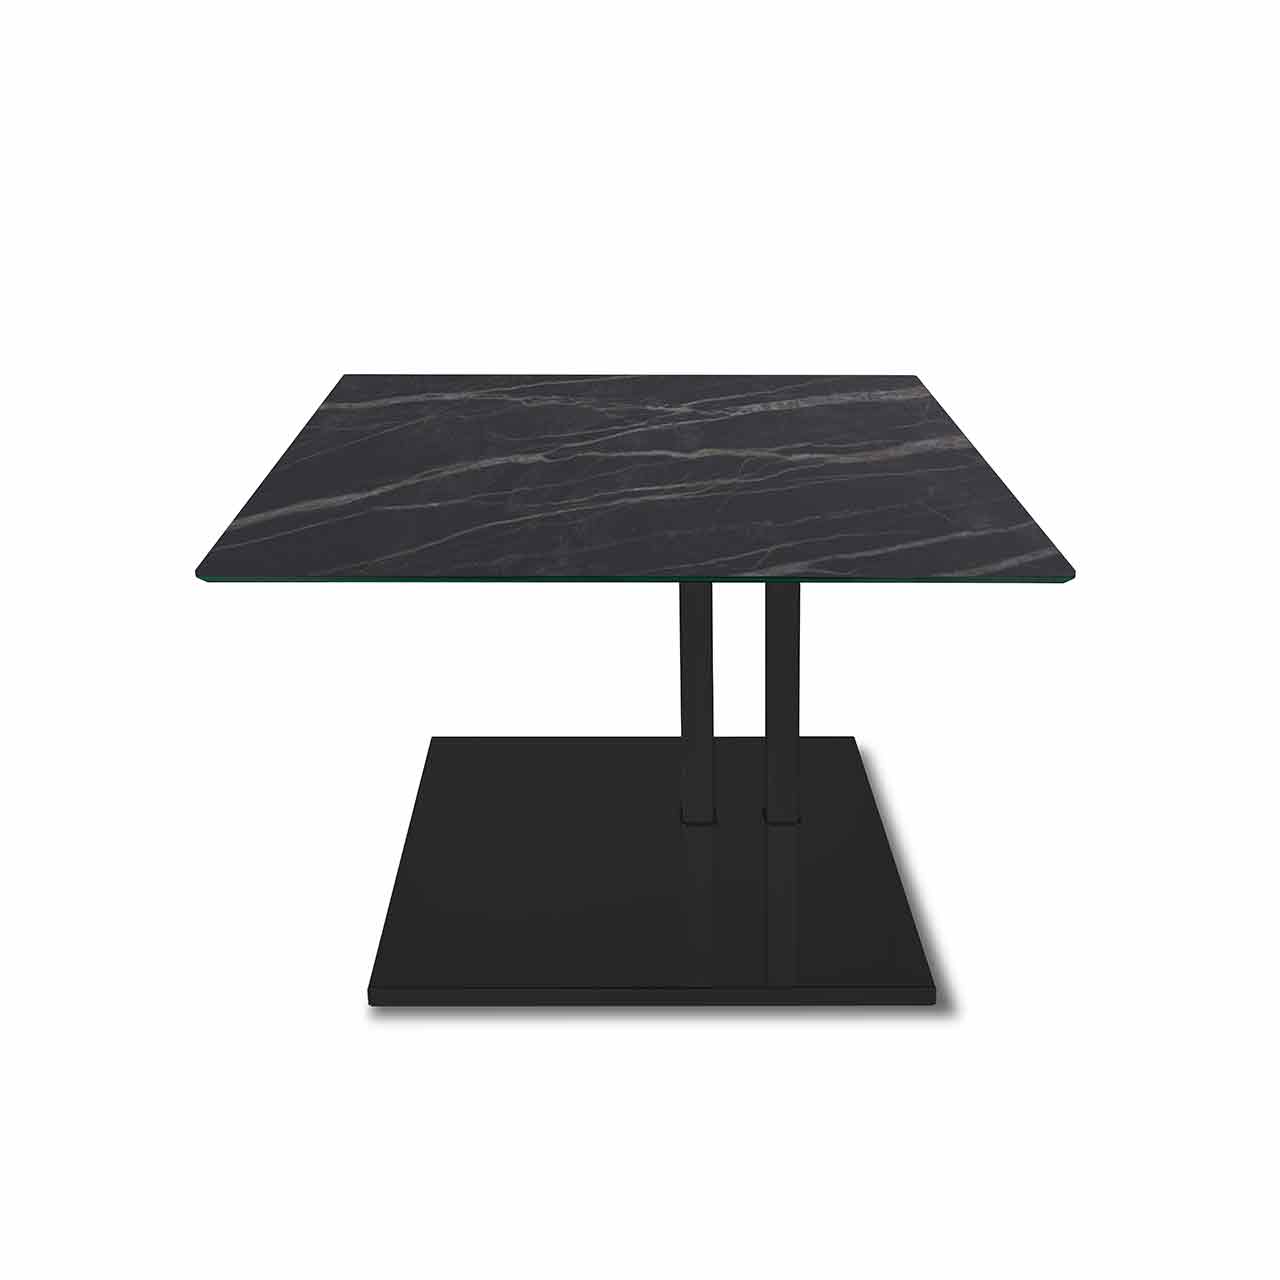 Ronald Schmitt – Beistelltisch Doppio K 925 | Tischplatte Keramik Noir Desire, Bodenplatte MDF schwarz